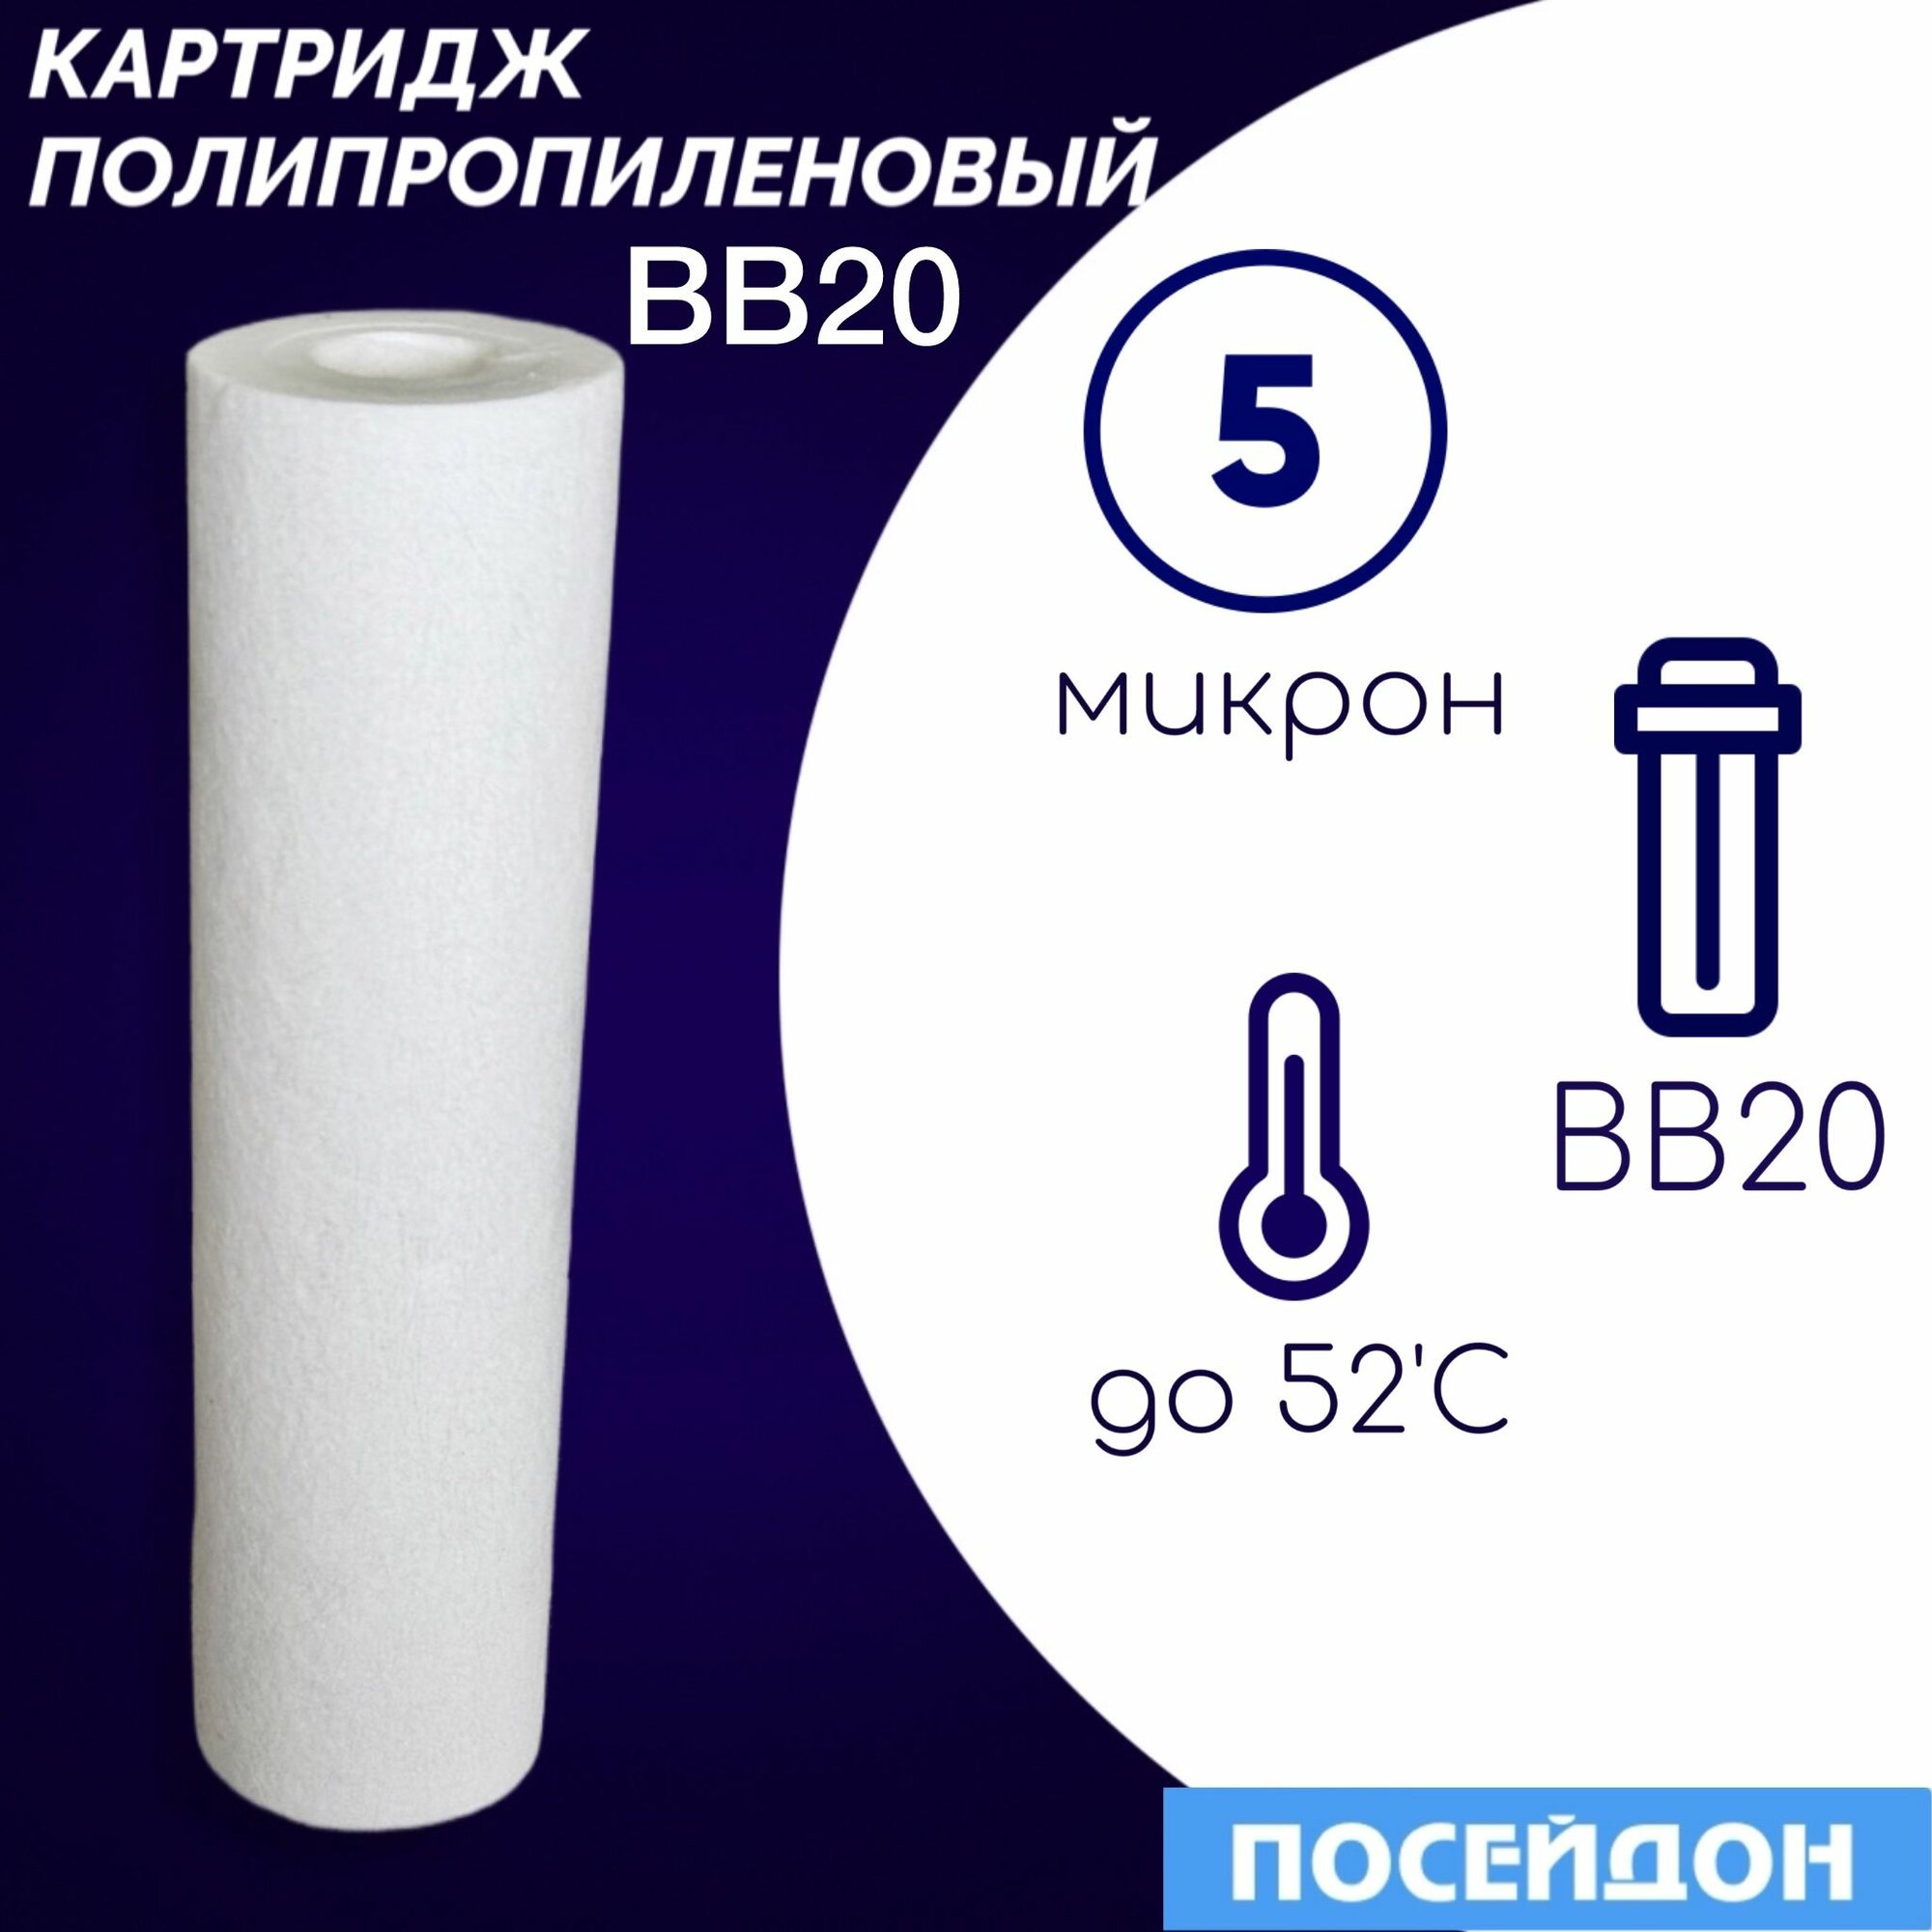 Картридж полипропиленовый ЭФГ 112/508 (1шт) 5 мкм элемент фильтрующий BigBlue20. Фильтр для воды